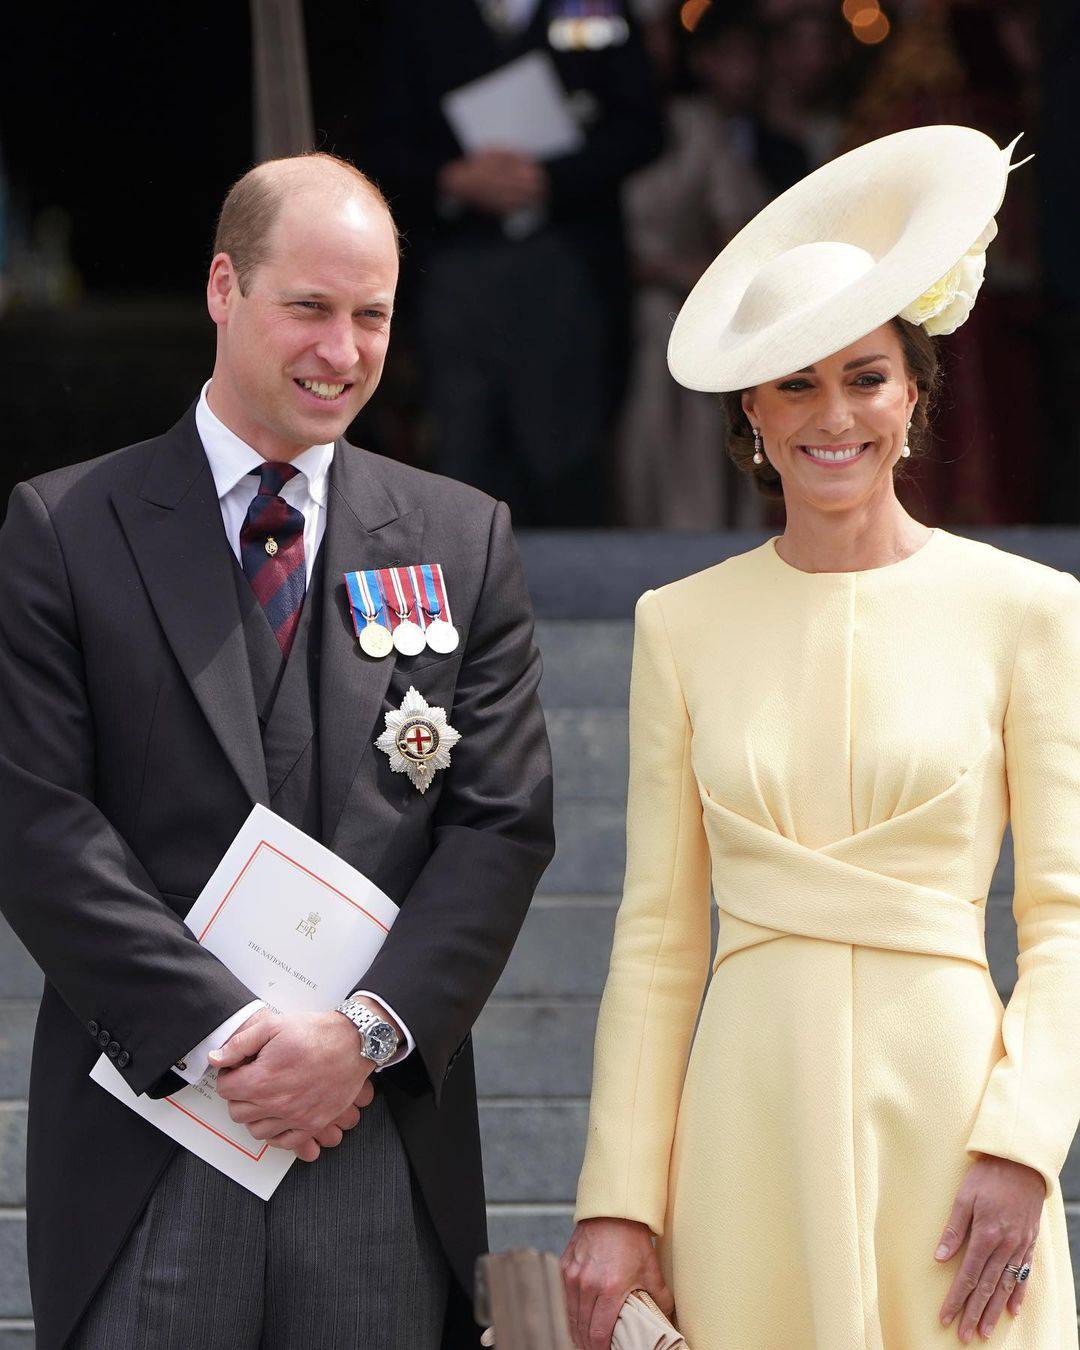 VIDEO Evo kako su princ William i Kate partijali prije braka: Snimka postala hit na TikToku